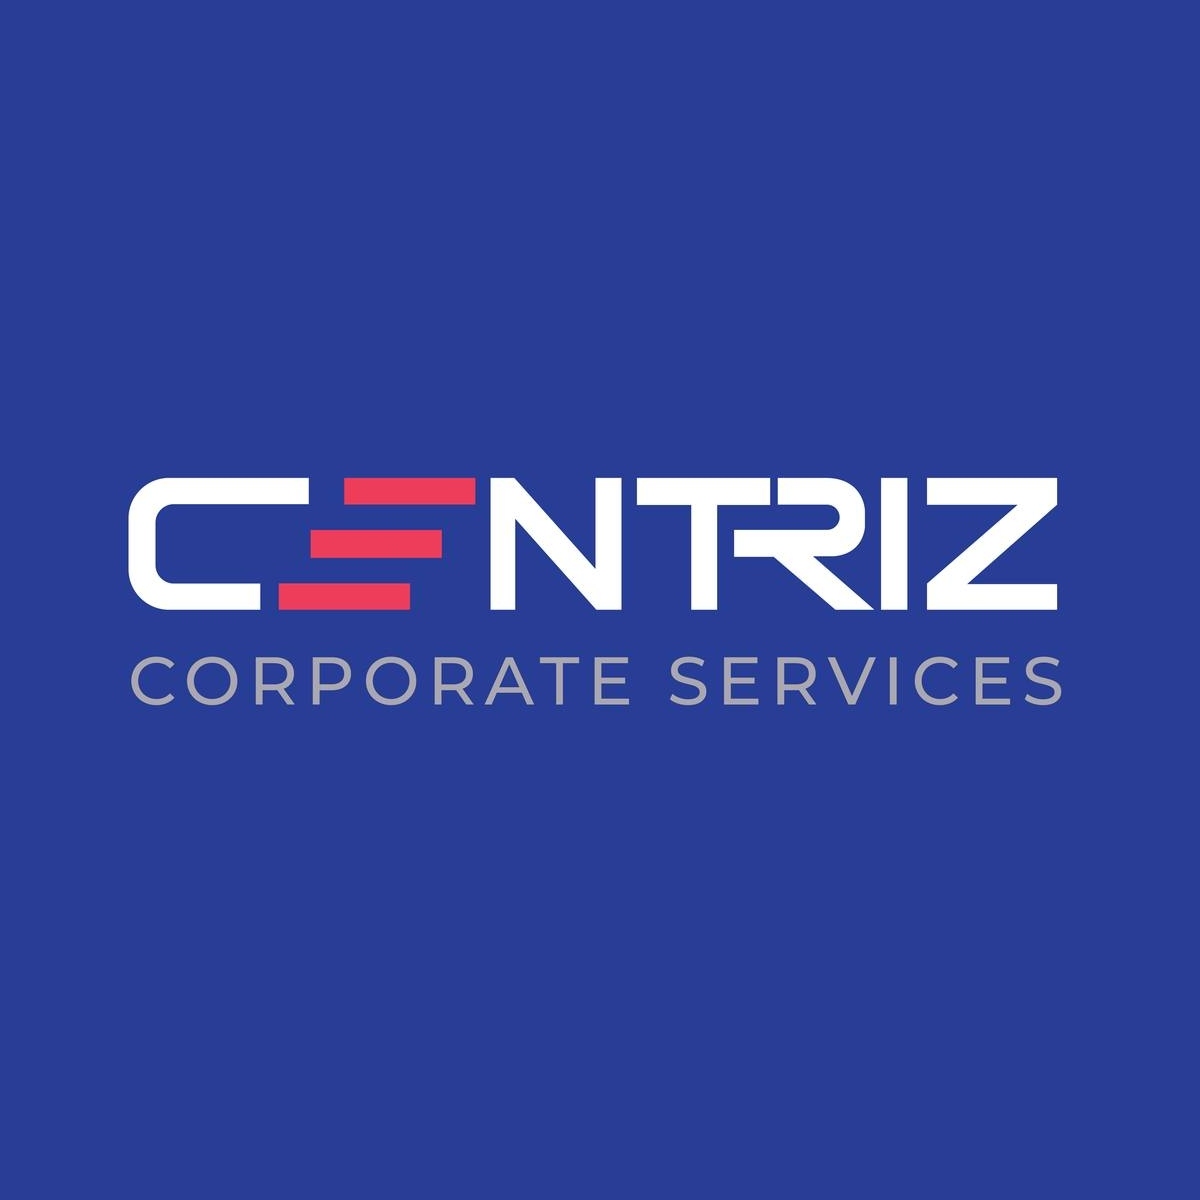 Centriz Corporate Services